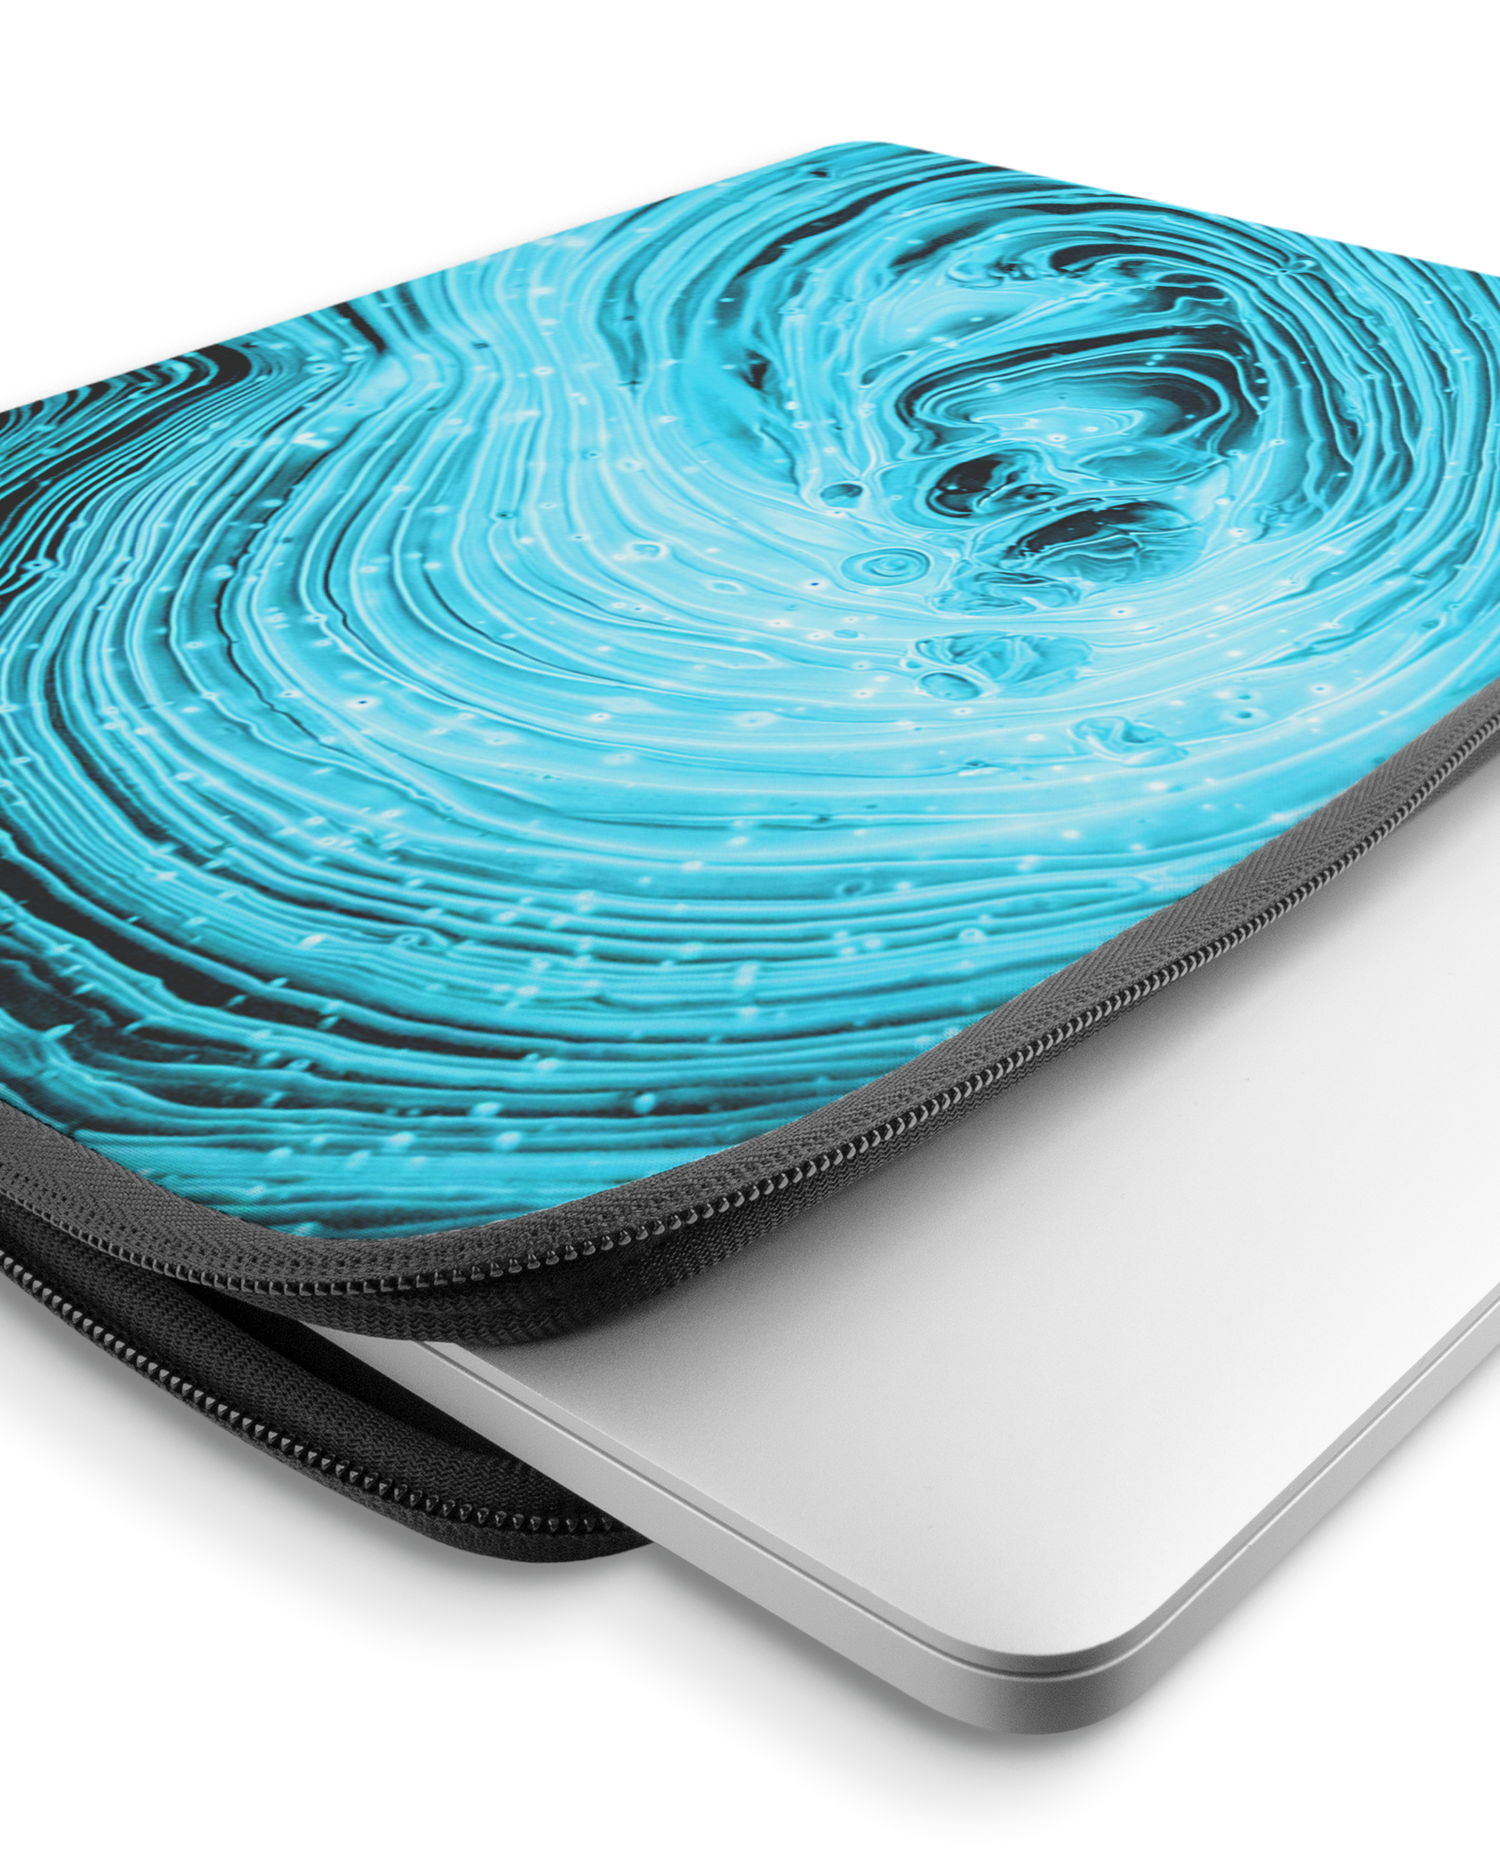 Turquoise Ripples Laptophülle 15-16 Zoll mit Gerät im Inneren